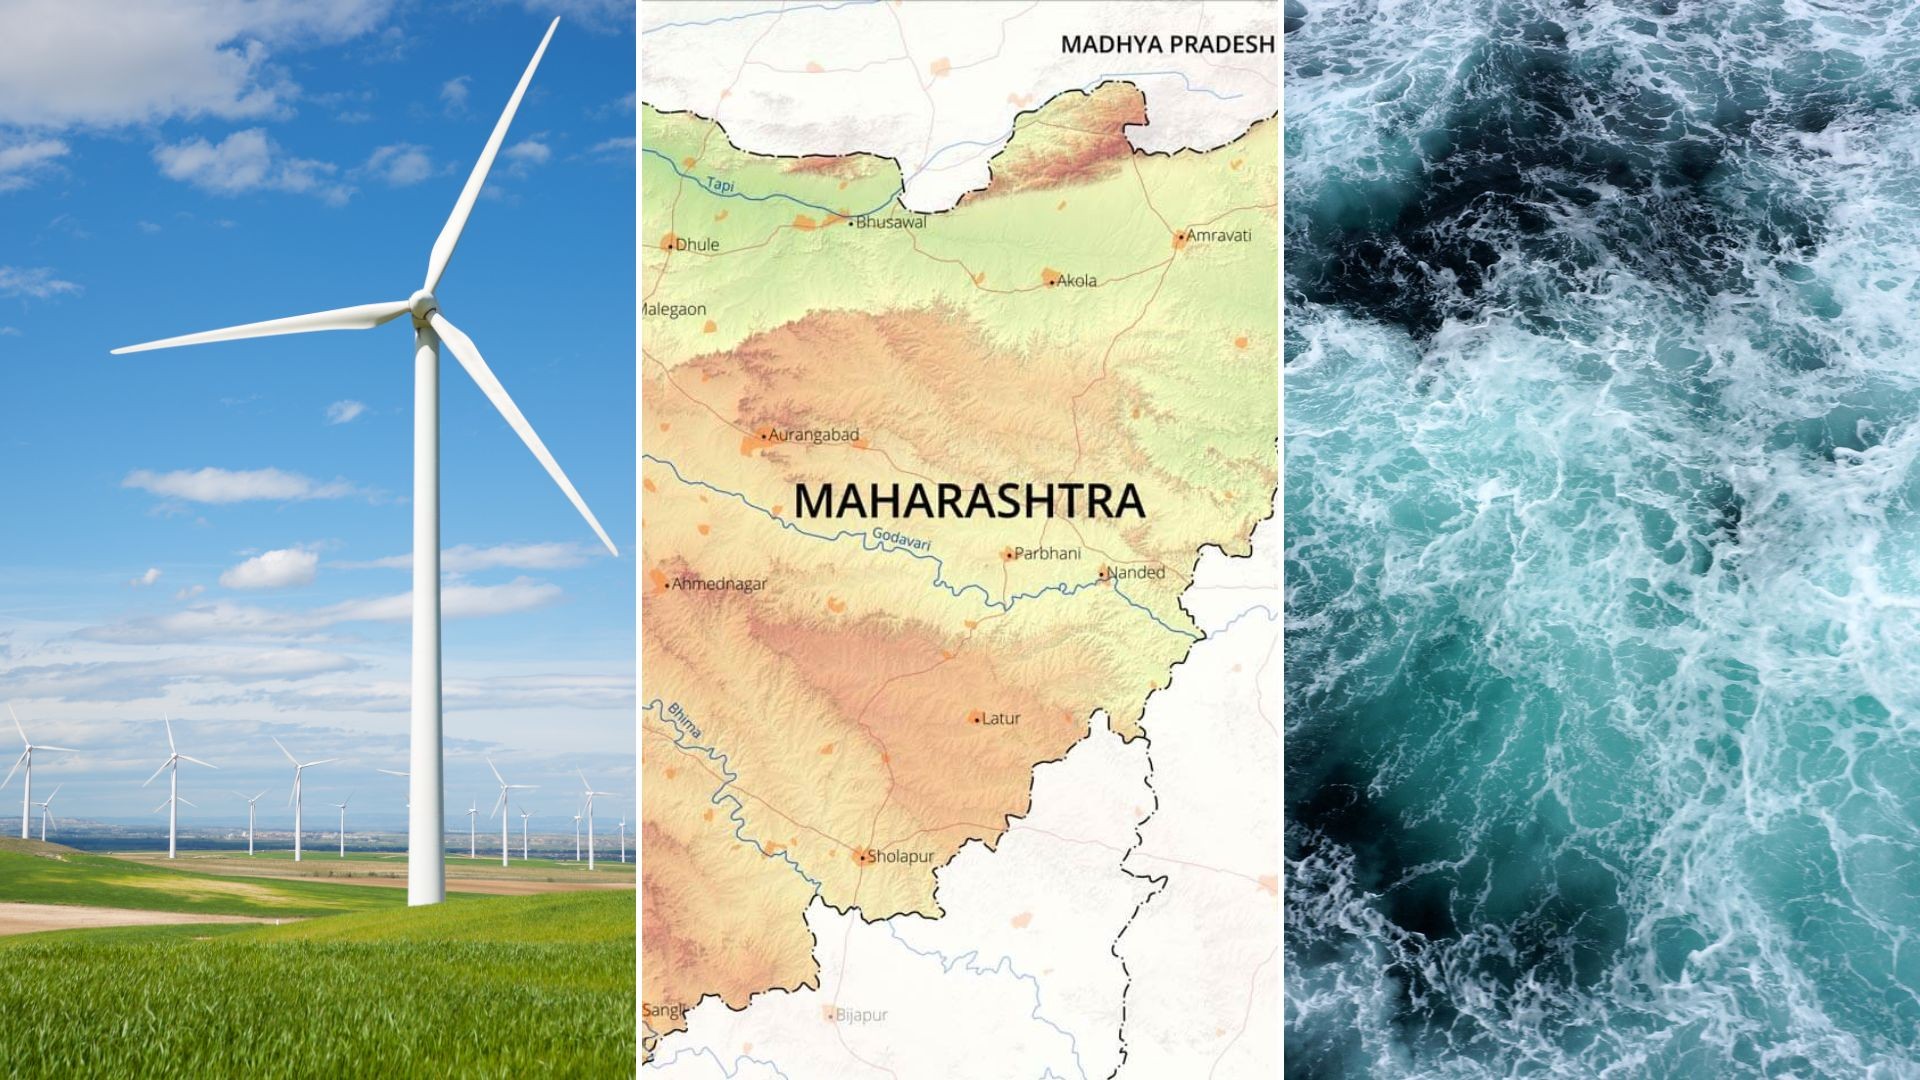 Windmill, Map of Maharashtra, Ocean